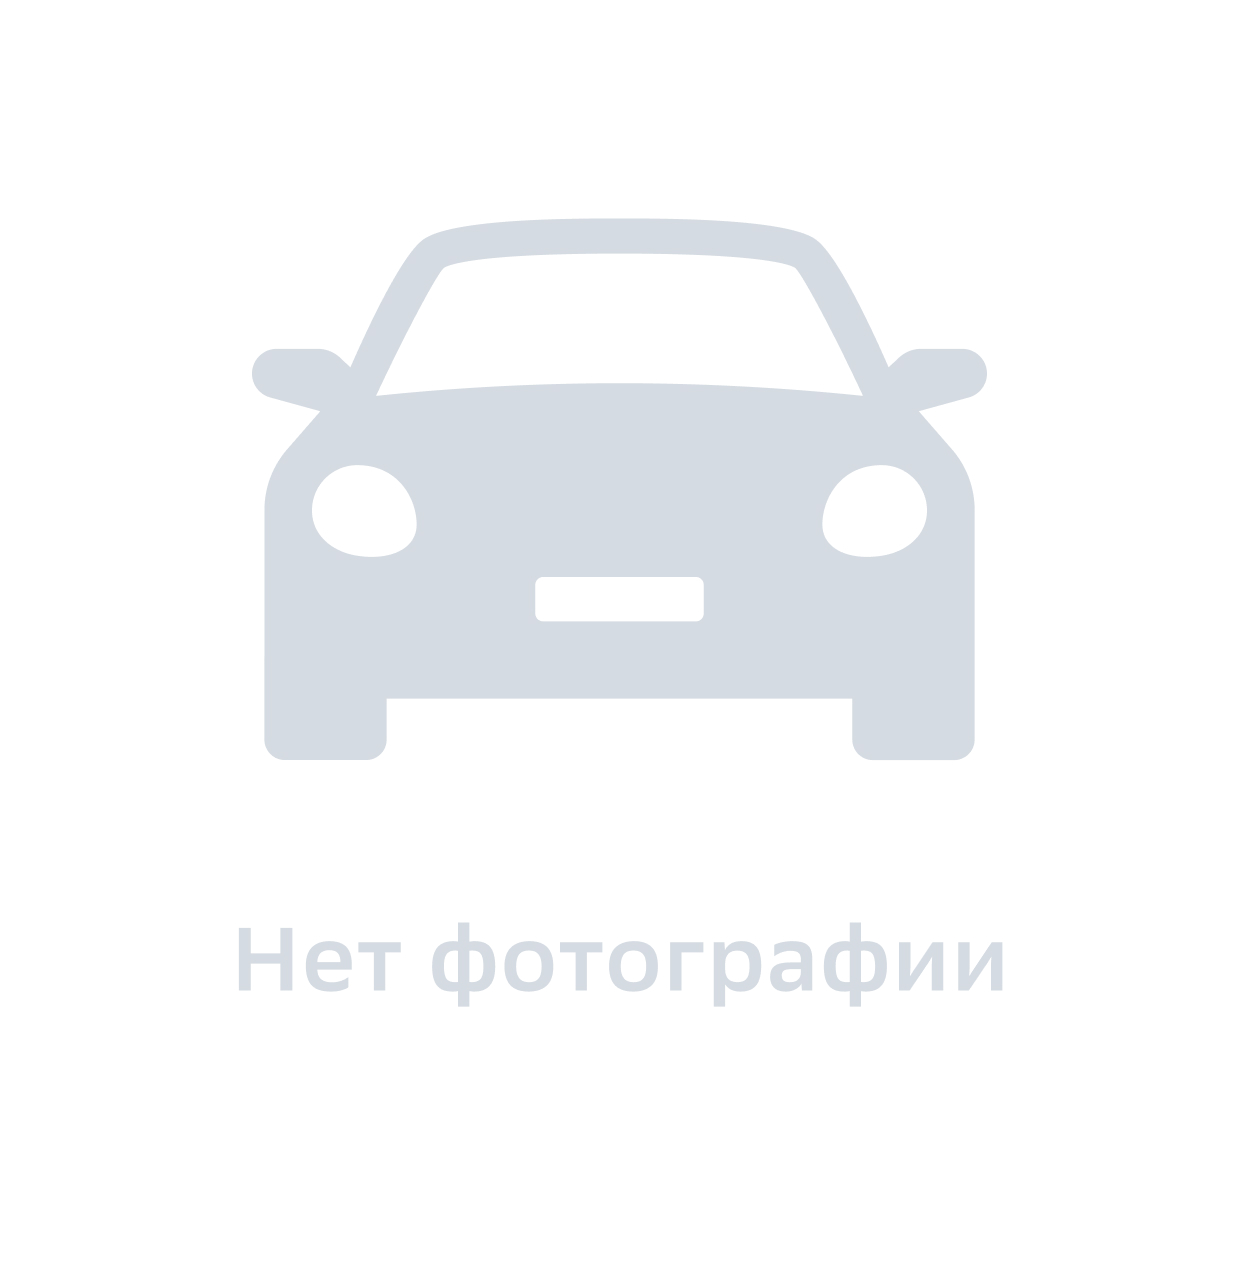 Втулка (Сайлентблок) Переднего Стабилизатора Fiat Doblo (2005-2015), Fiat Albea (2002-2012